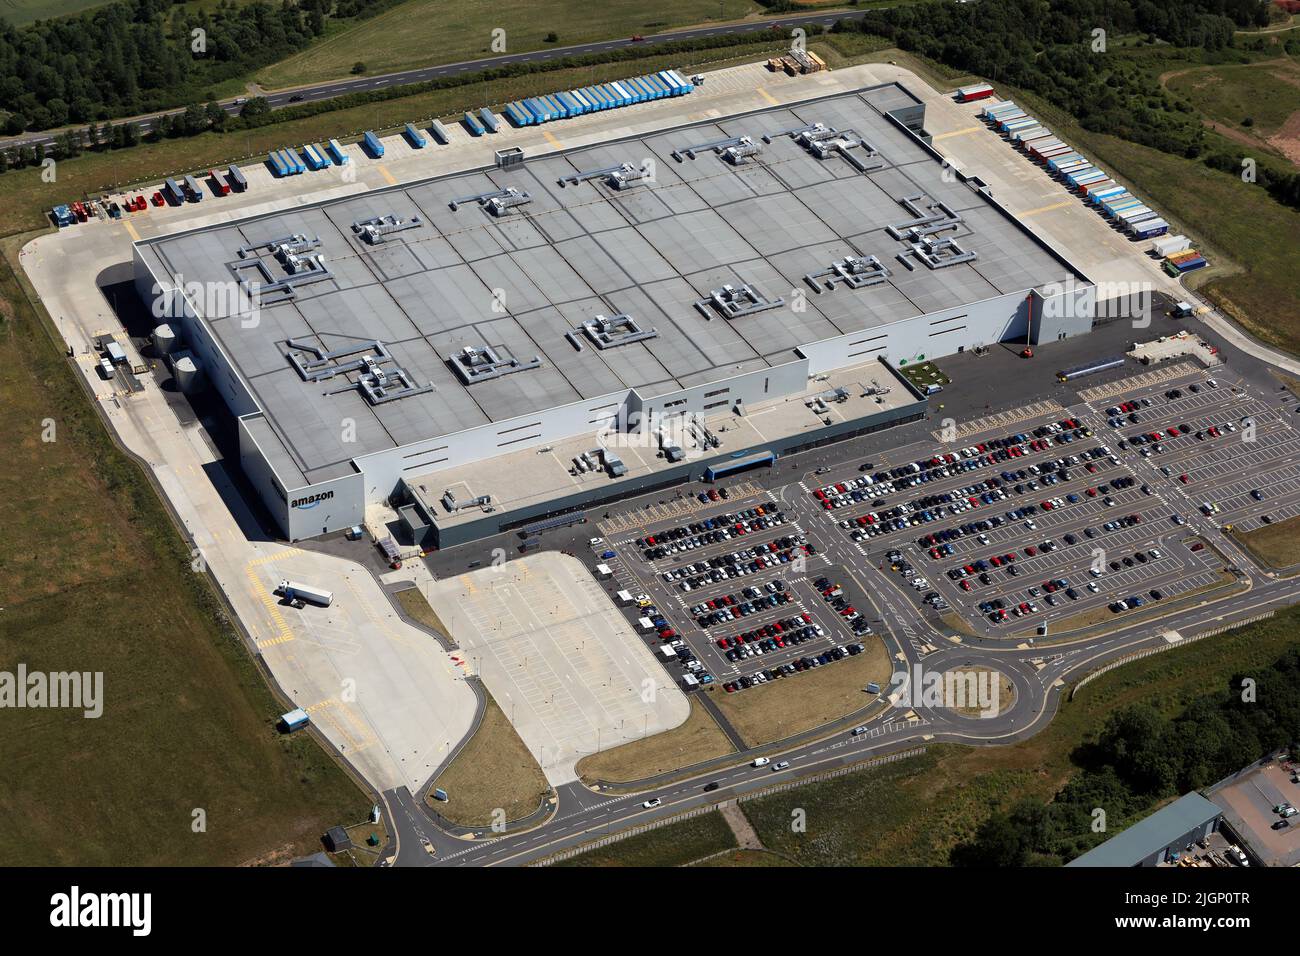 Vista aérea del almacén de Amazon UK Services MME1 en Darlington, condado de Durham. Esto muestra el lado oeste - la parte delantera del edificio. Foto de stock